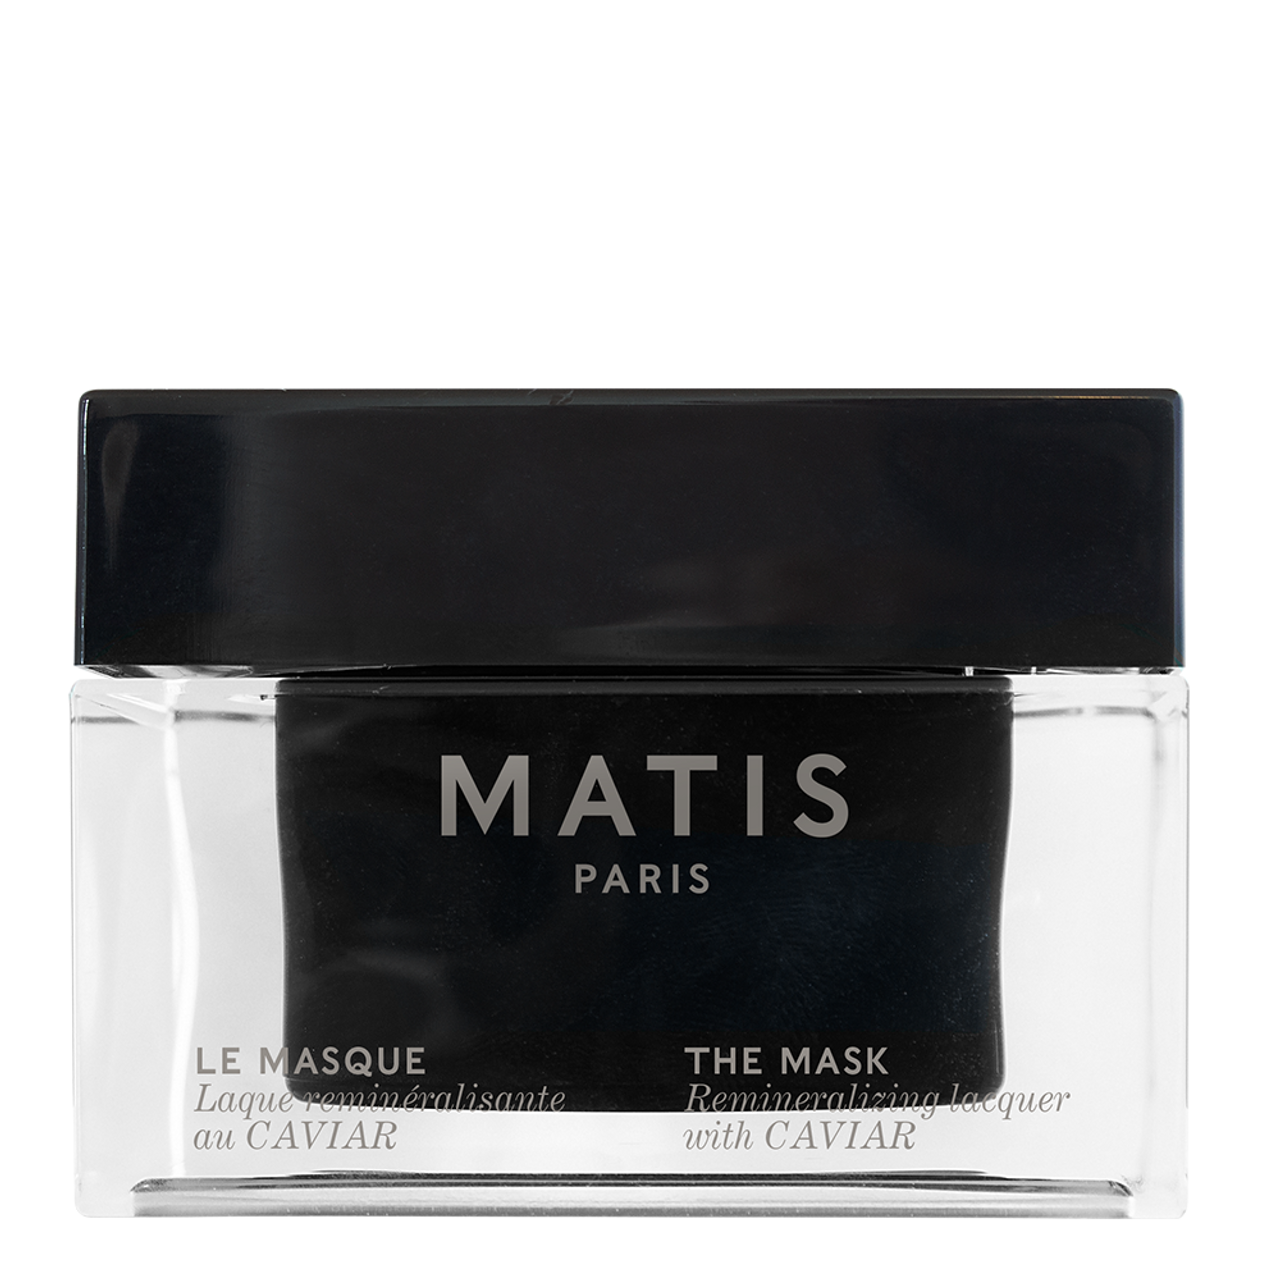 Matis Paris Caviar The Mask - 1.7oz